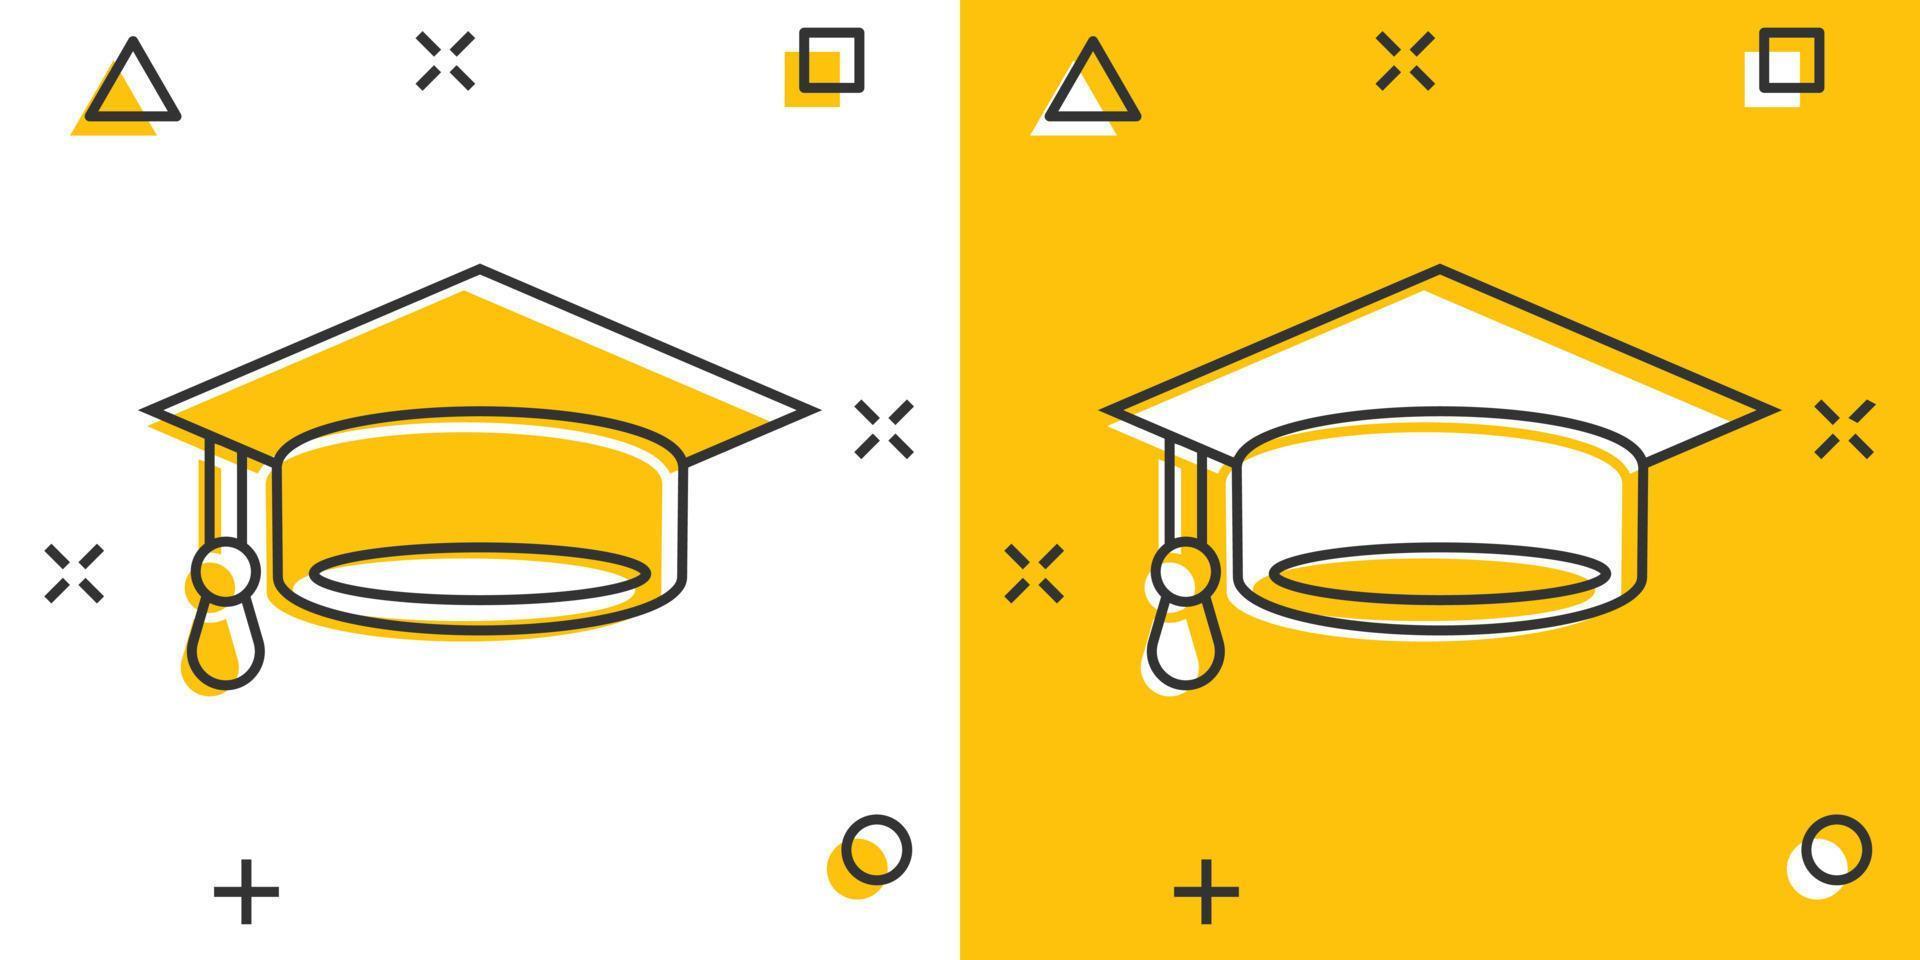 Abschlusshut-Symbol im Comic-Stil. studentenkappenkarikatur-vektorillustration auf weißem lokalisiertem hintergrund. Geschäftskonzept mit Splash-Effekt für die Universität. vektor